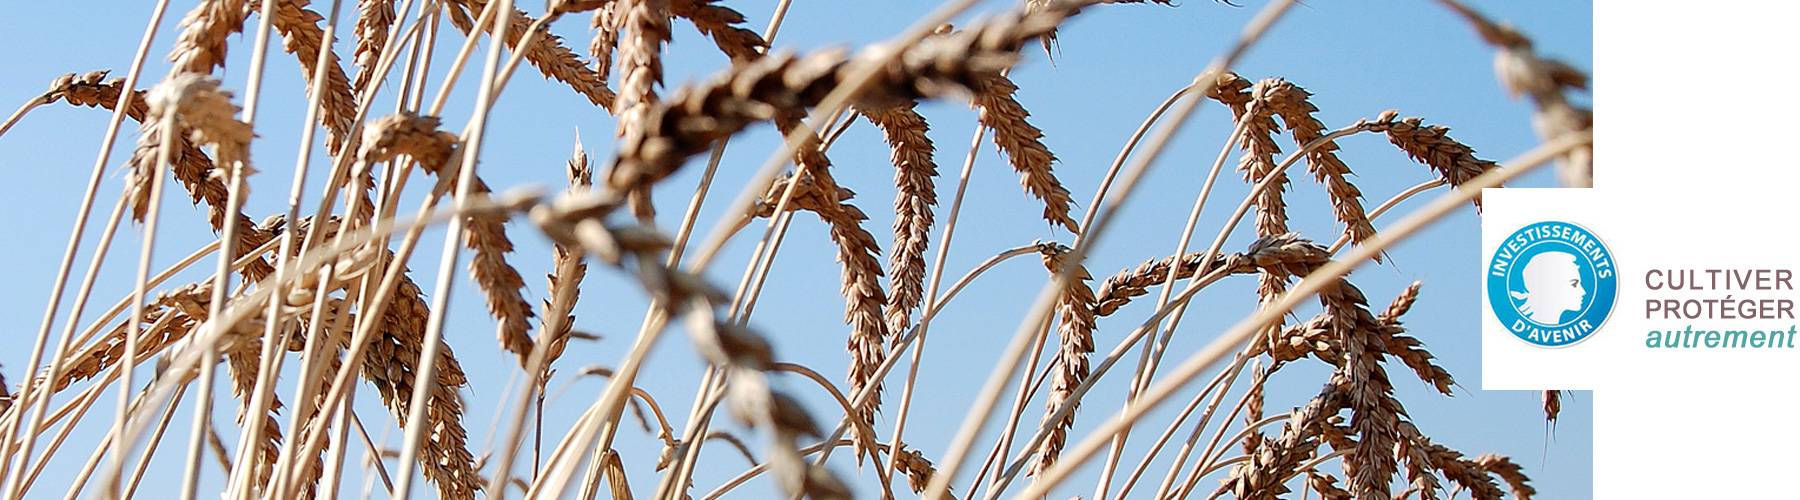 photo de blé et logo Investissement d'avenir "Cultiver-Protéger autrement"